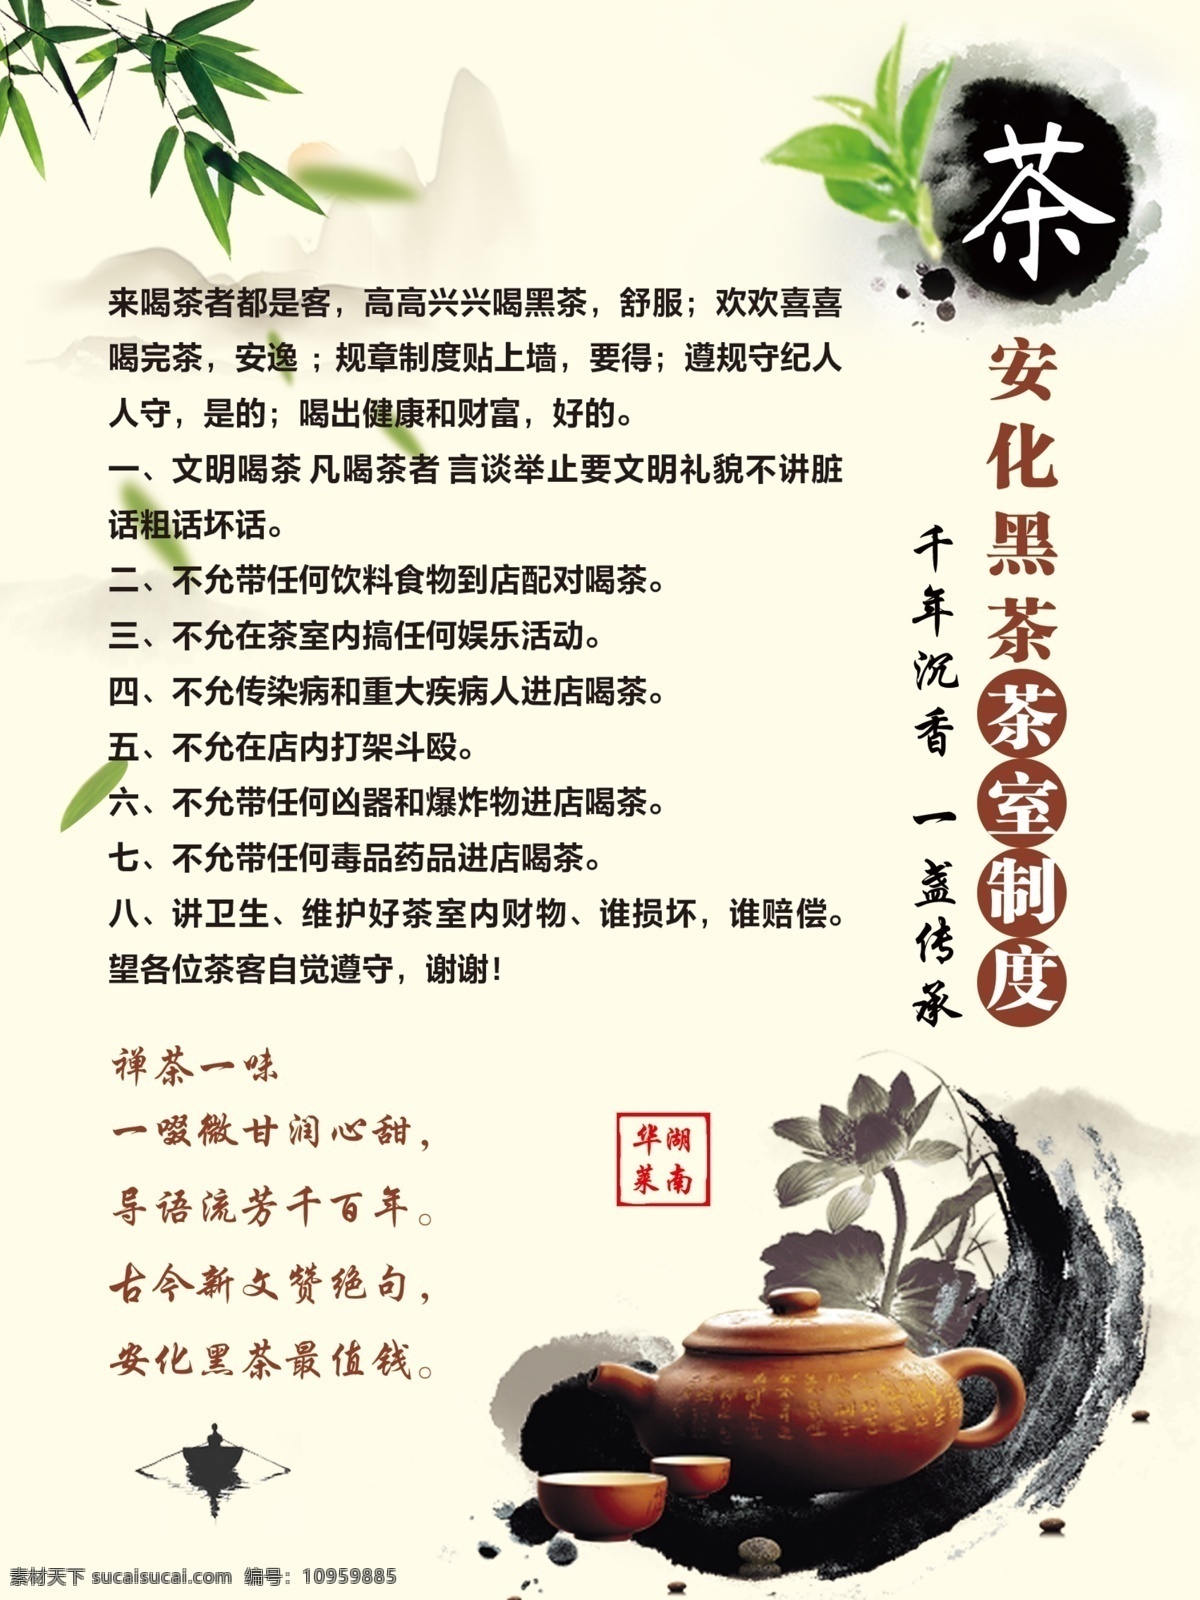 安化 黑茶 茶室 制度 安化黑茶 茶室制度 茶 湖南安化 室内广告设计